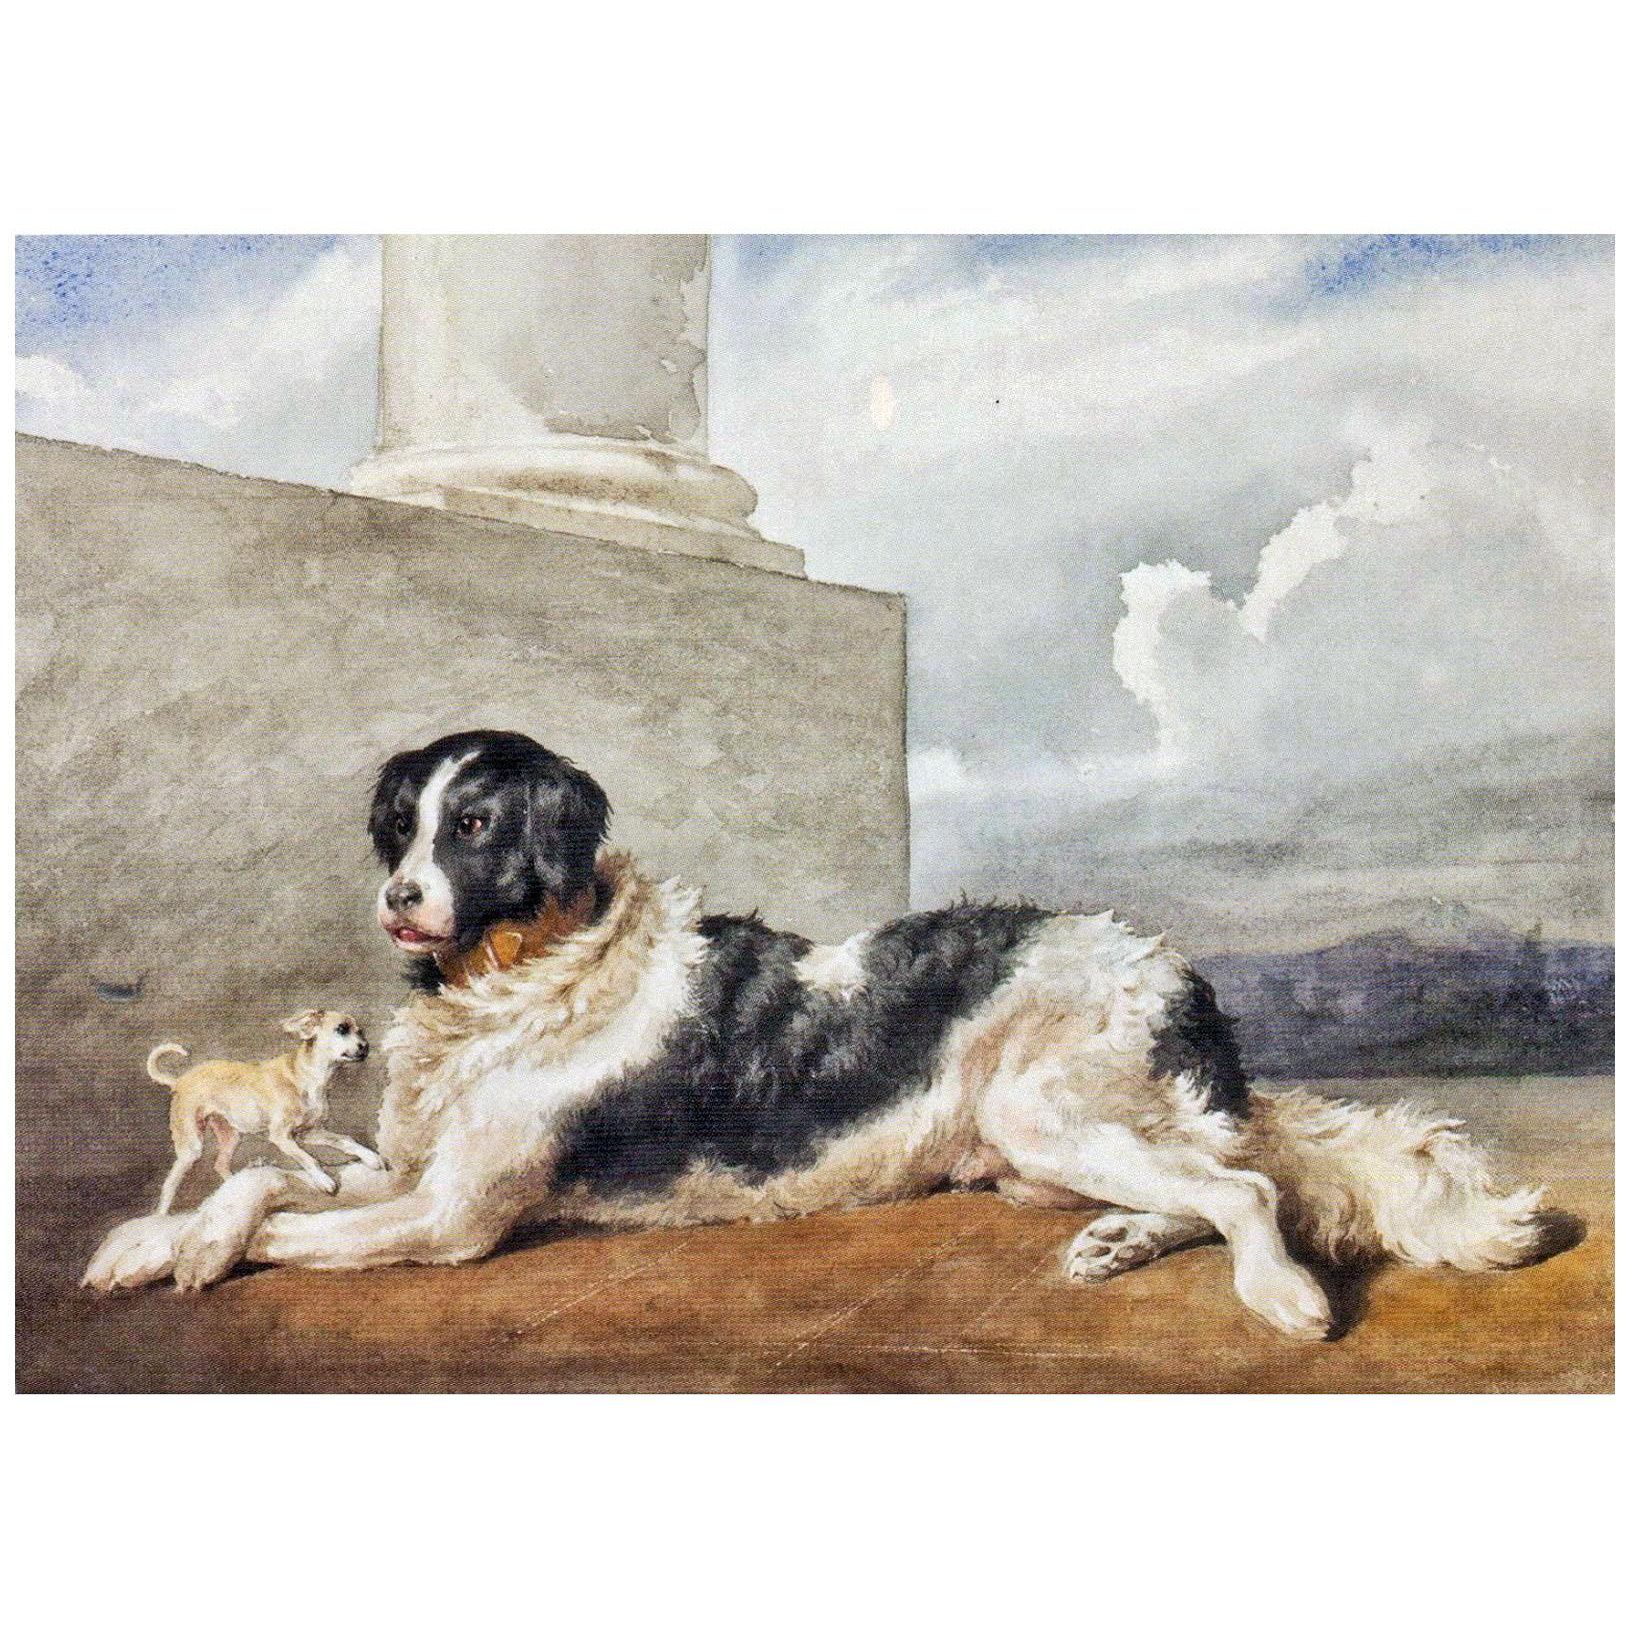 Rosa Bonheur. Sultan et Rosette, les chiens des Czartoryski. 1852. MNW, Warsaw